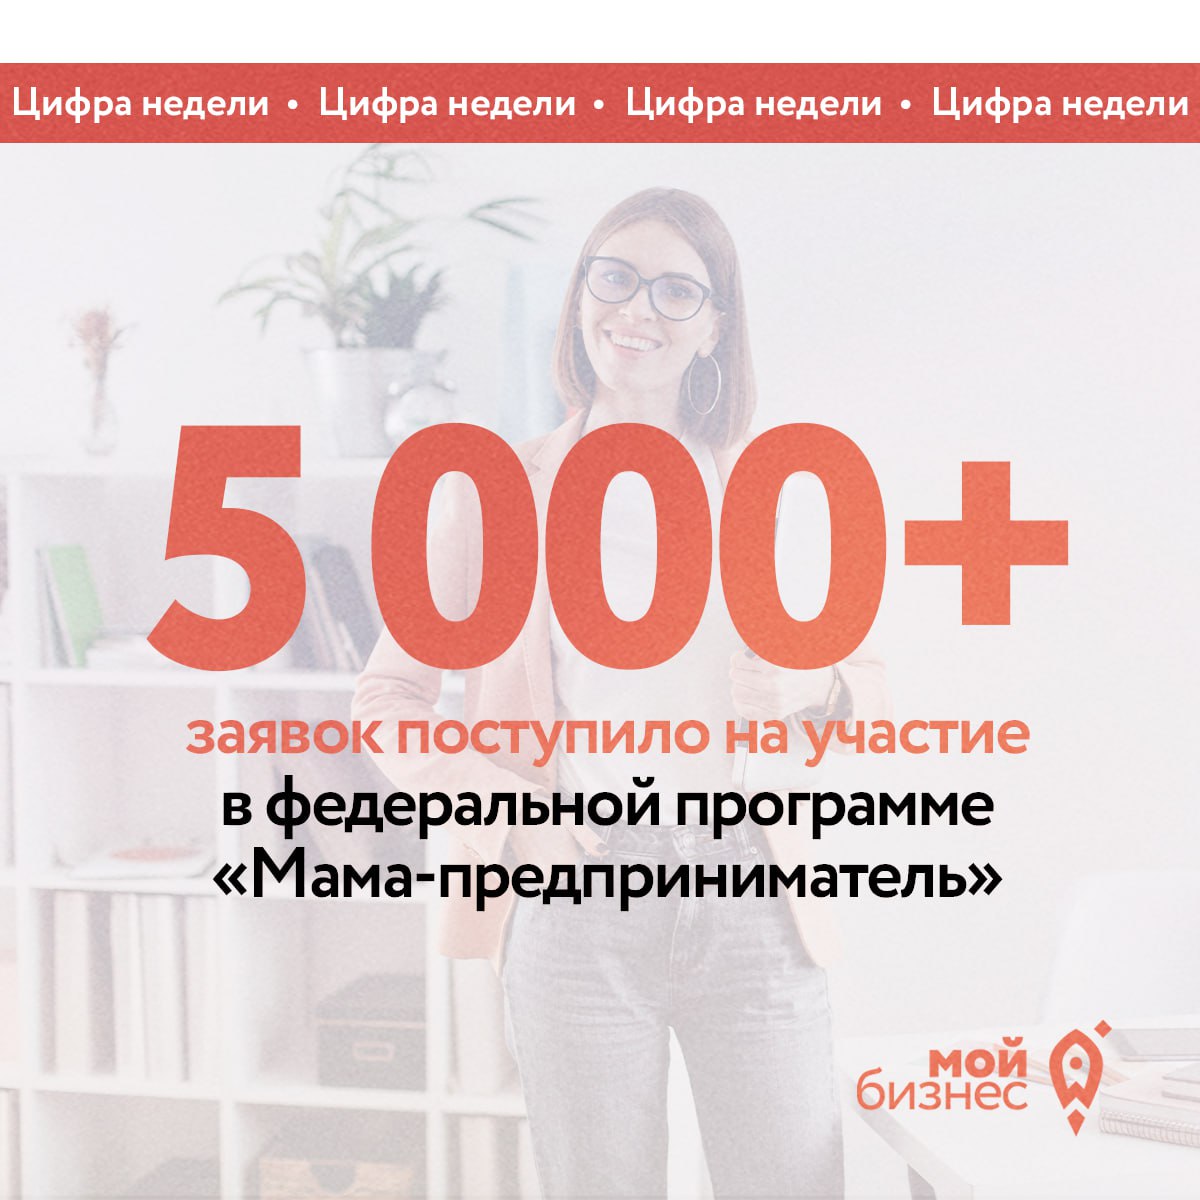 Более 5 000 заявок уже поступило на участие в федеральной программе «Мама-предприниматель»